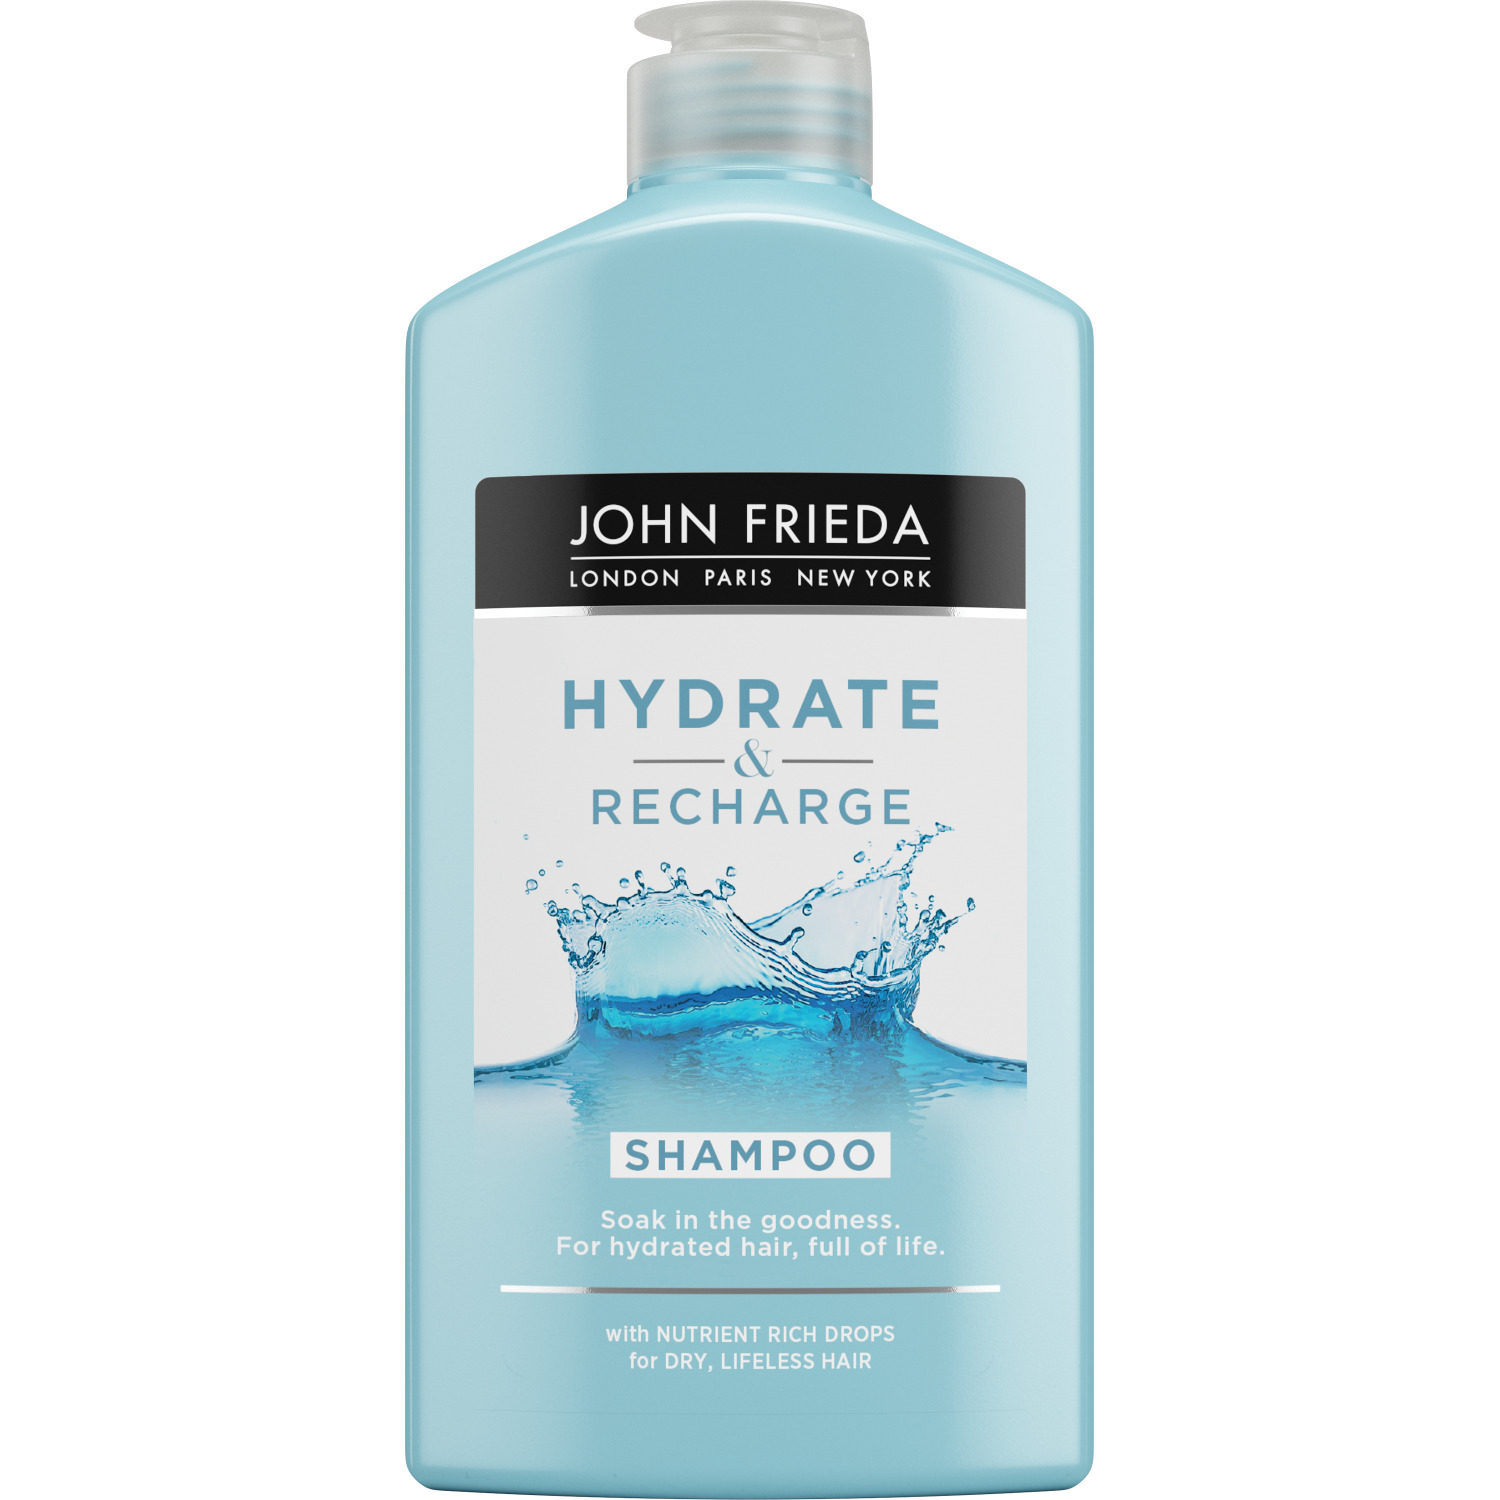 Купить Шампунь John Frieda Hydrate & Recharge увлажняющий для сухих волос, 250 мл, шампунь Hydrate & Recharge увлажняющий для сухих волос